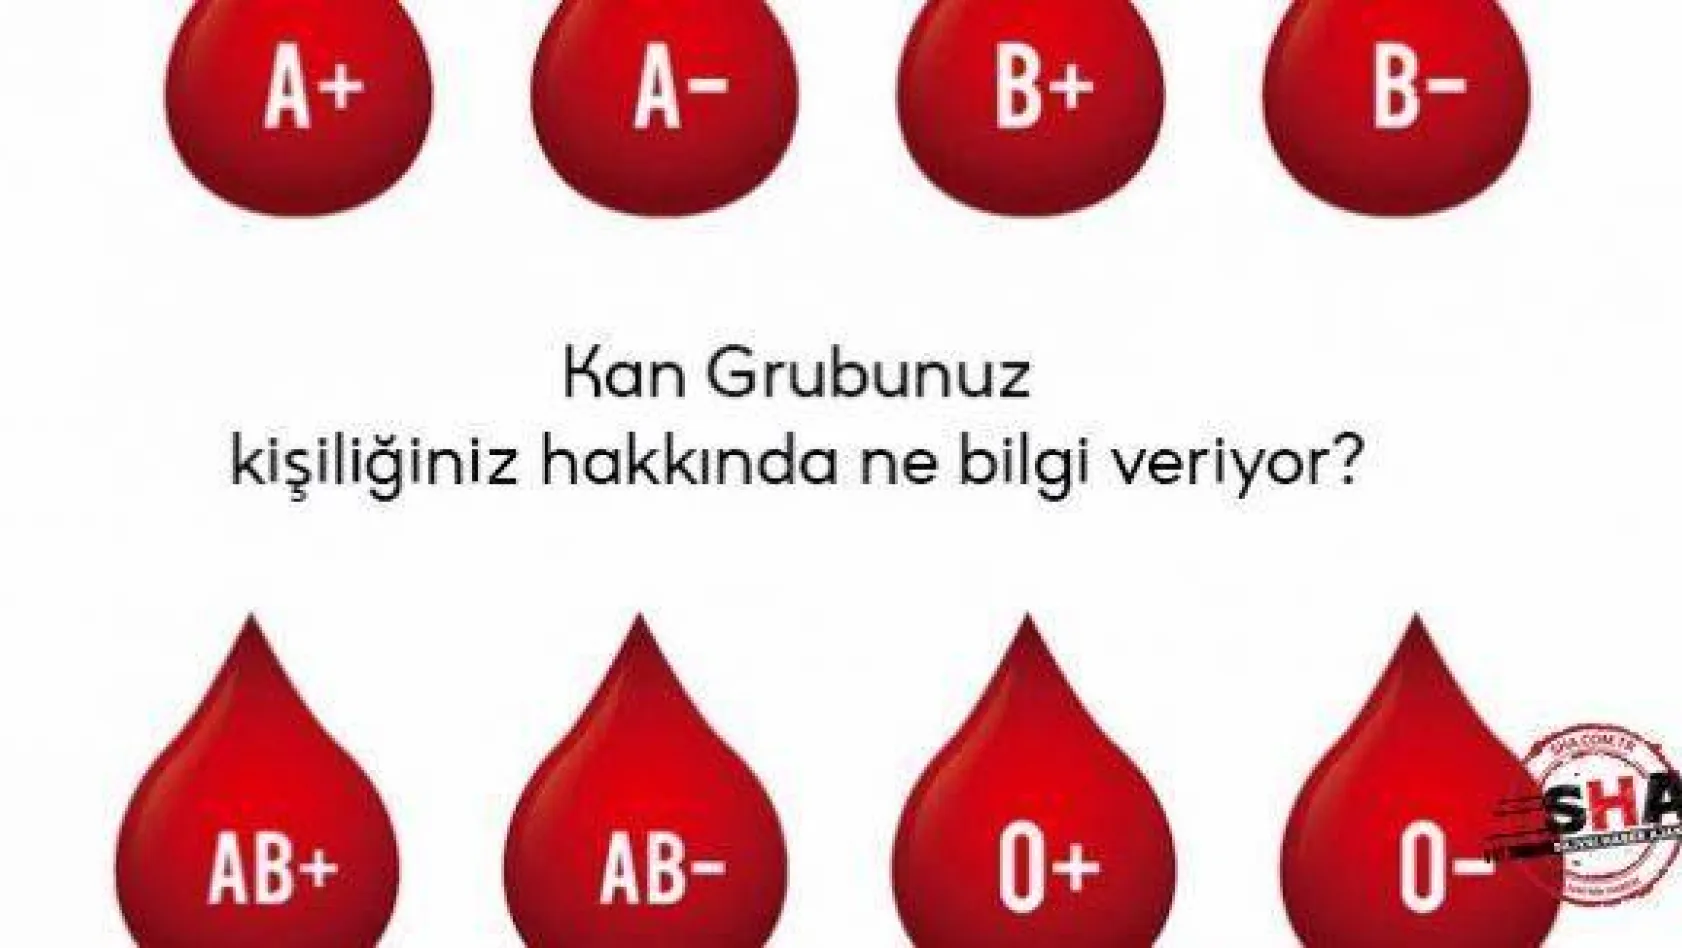 Kan grubunuz kişiliğiniz hakkında ne bilgi veriyor?